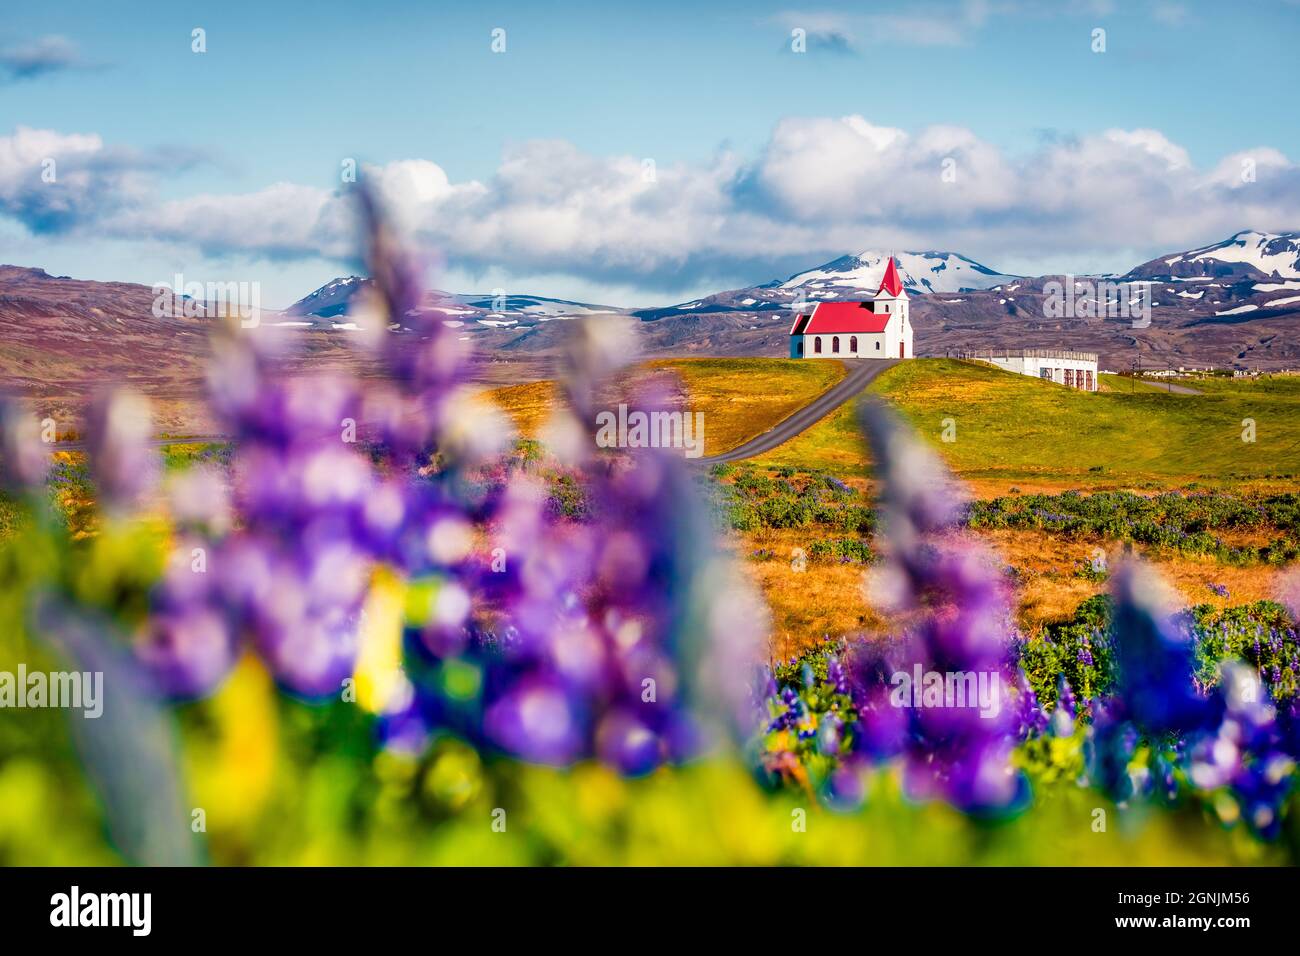 Vue panoramique le matin de l'église emblématique de glace - Ingjaldsholl. Magnifique scène d'été de l'Islande avec champ de fleurs lupin et montagne enneigée Banque D'Images